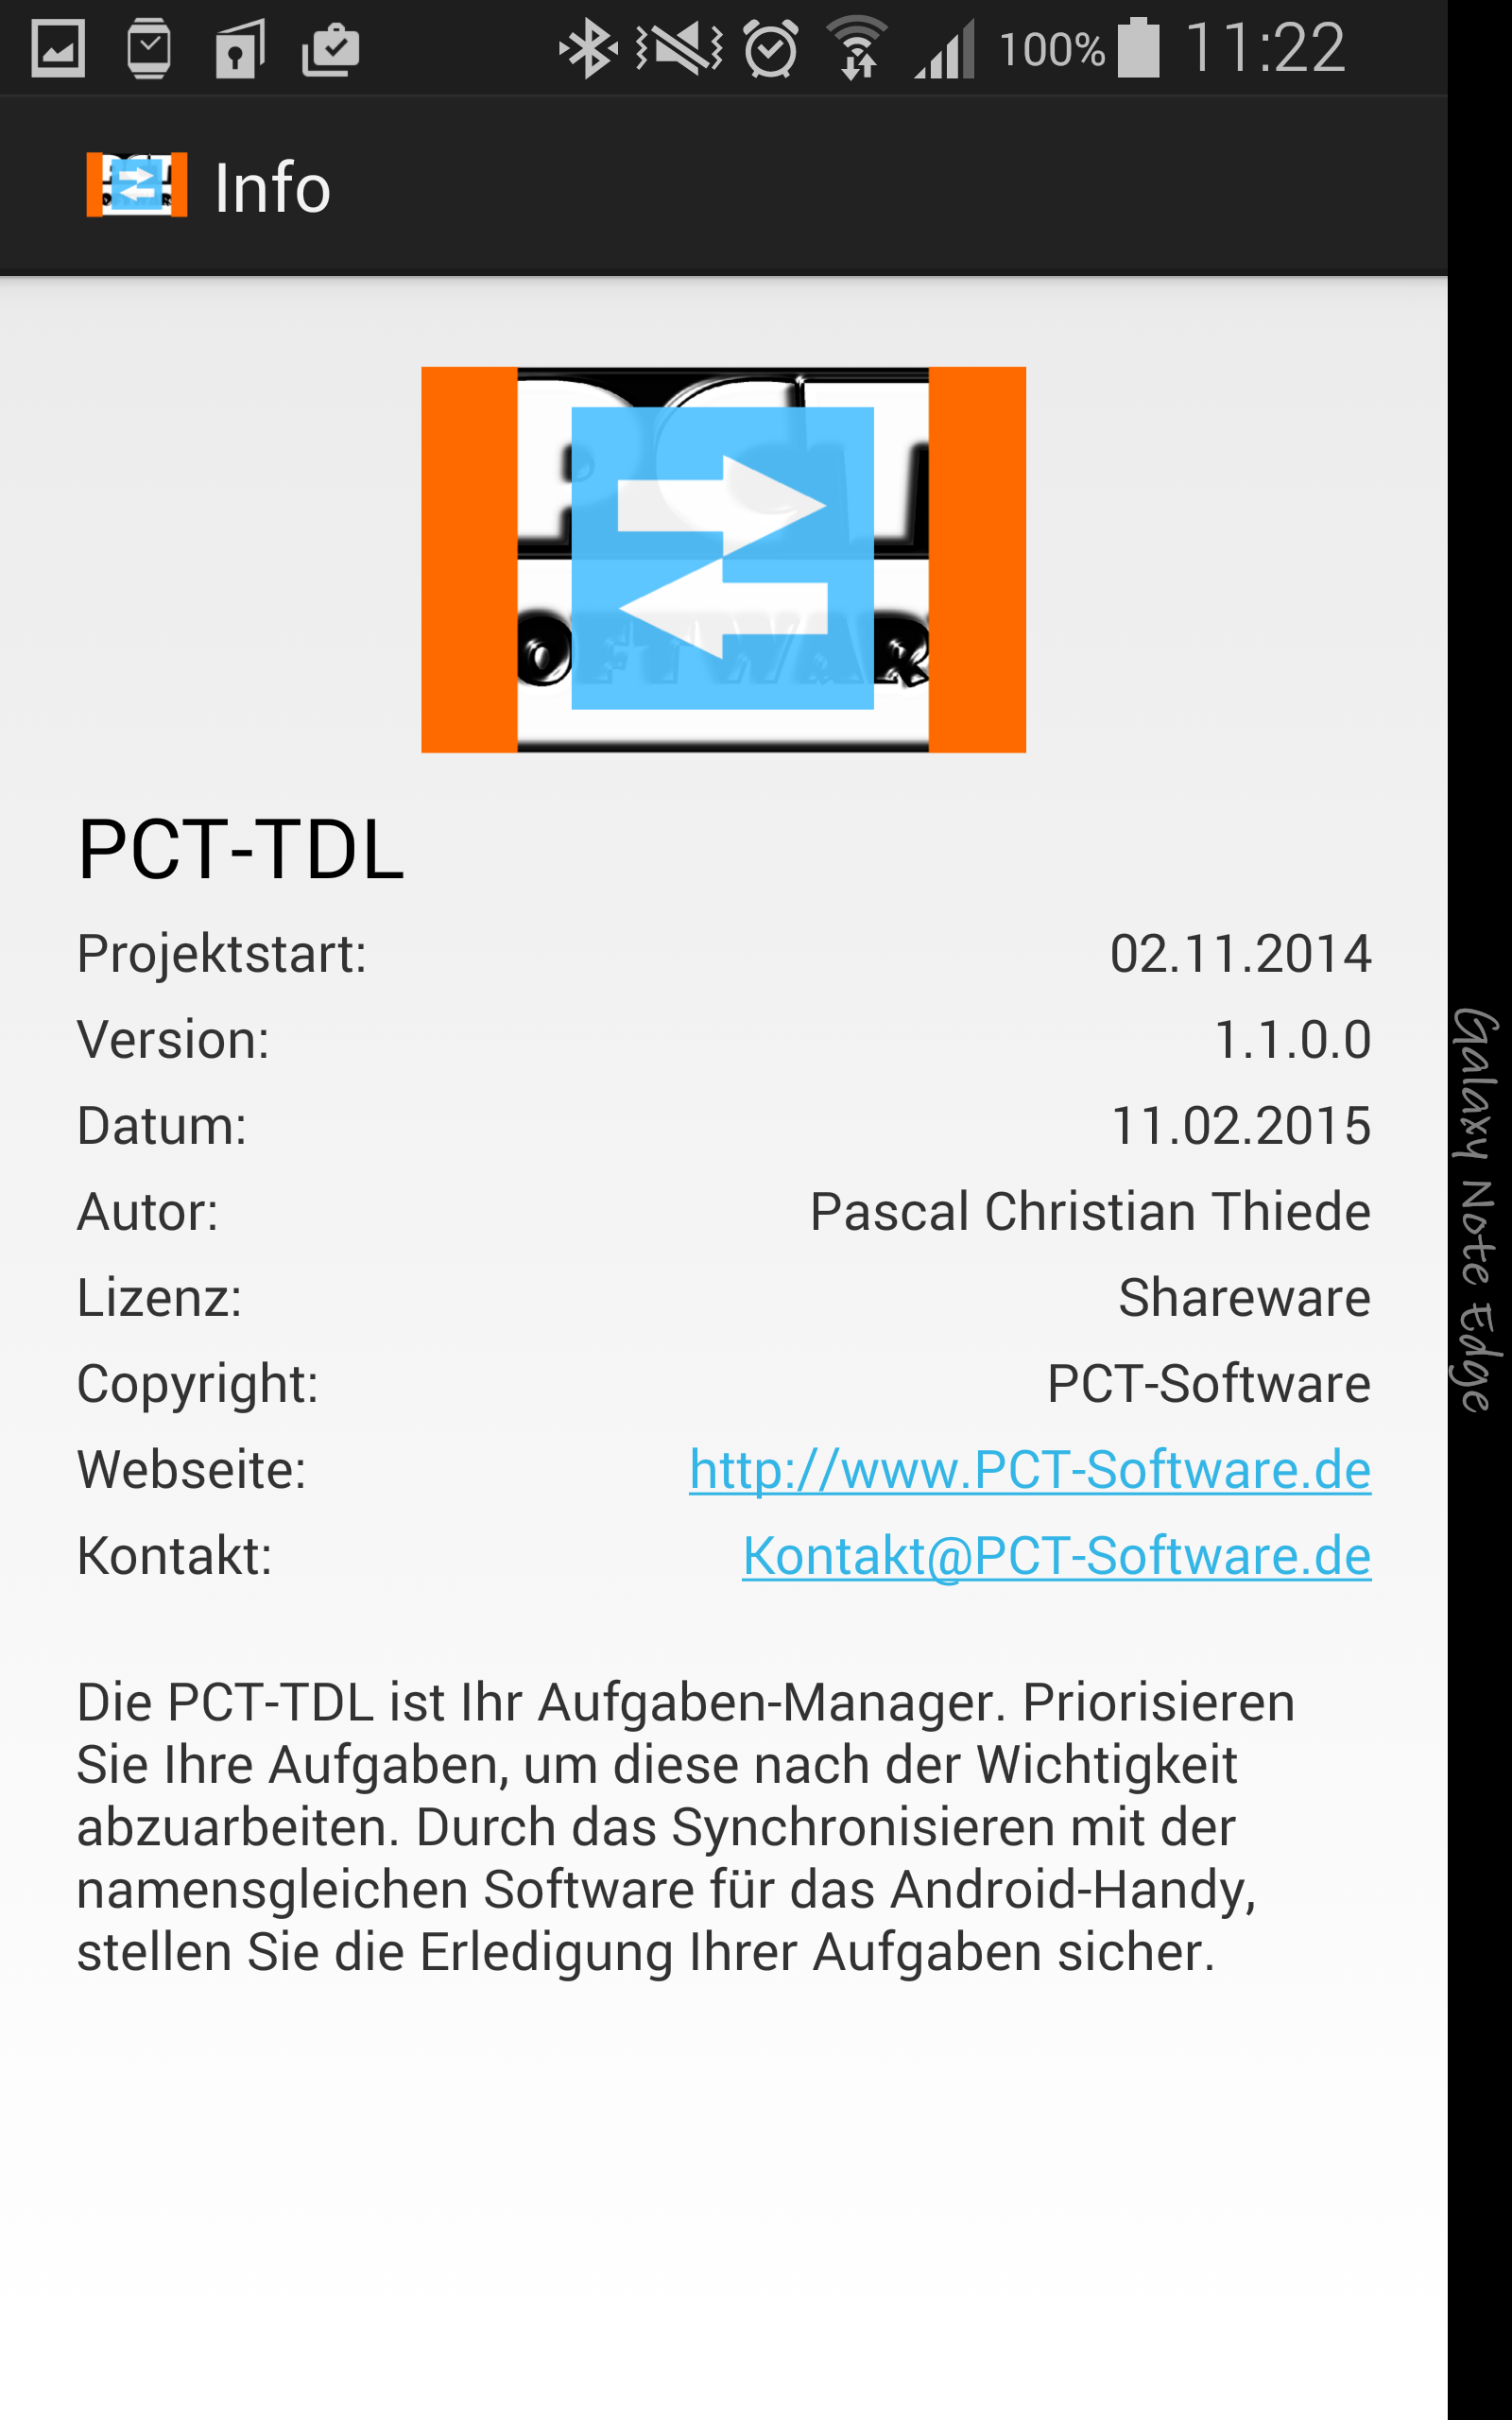 PCT-TDL - Client | Aufgaben anlegen und verwalten - Android App - Screenshot 12.